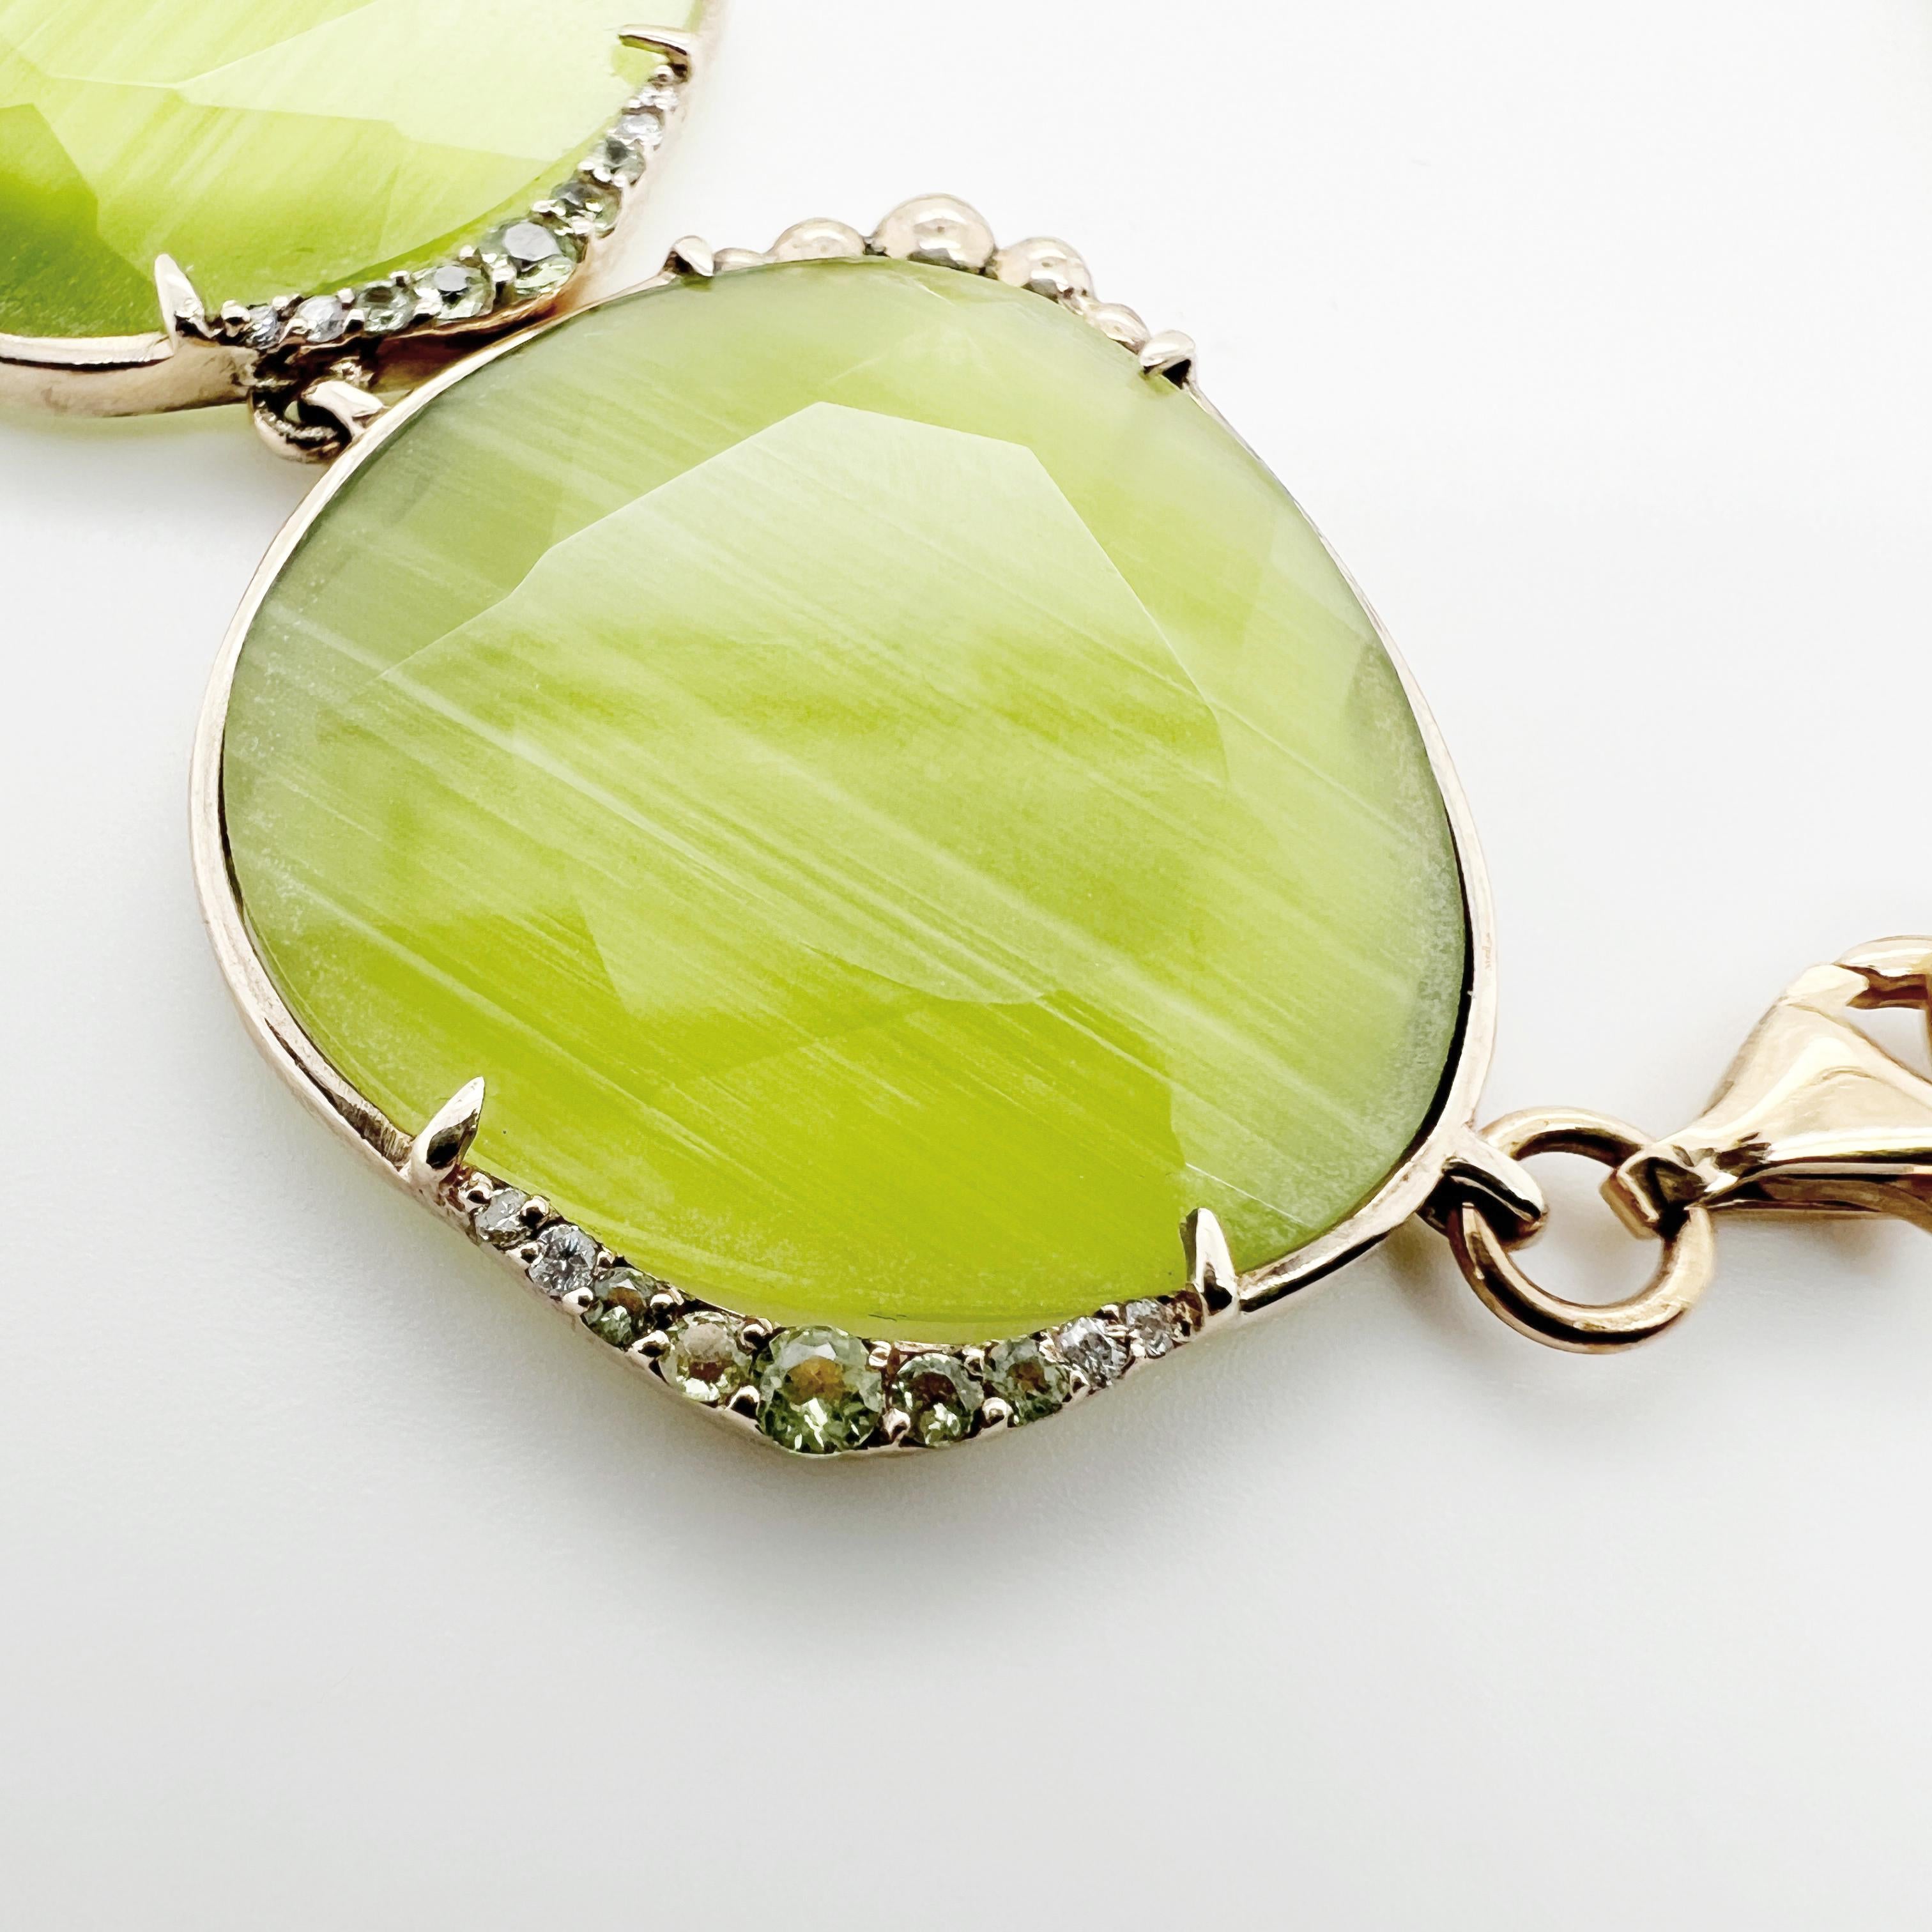 Le bracelet Optic Chic Collectional est une pièce unique réalisée à partir des matériaux les plus nobles. Whiting se compose d'un corps en or 9kt avec des diamants naturels blancs, des doublets de cristal Optic Fiber & Rock et des péridots verts. La